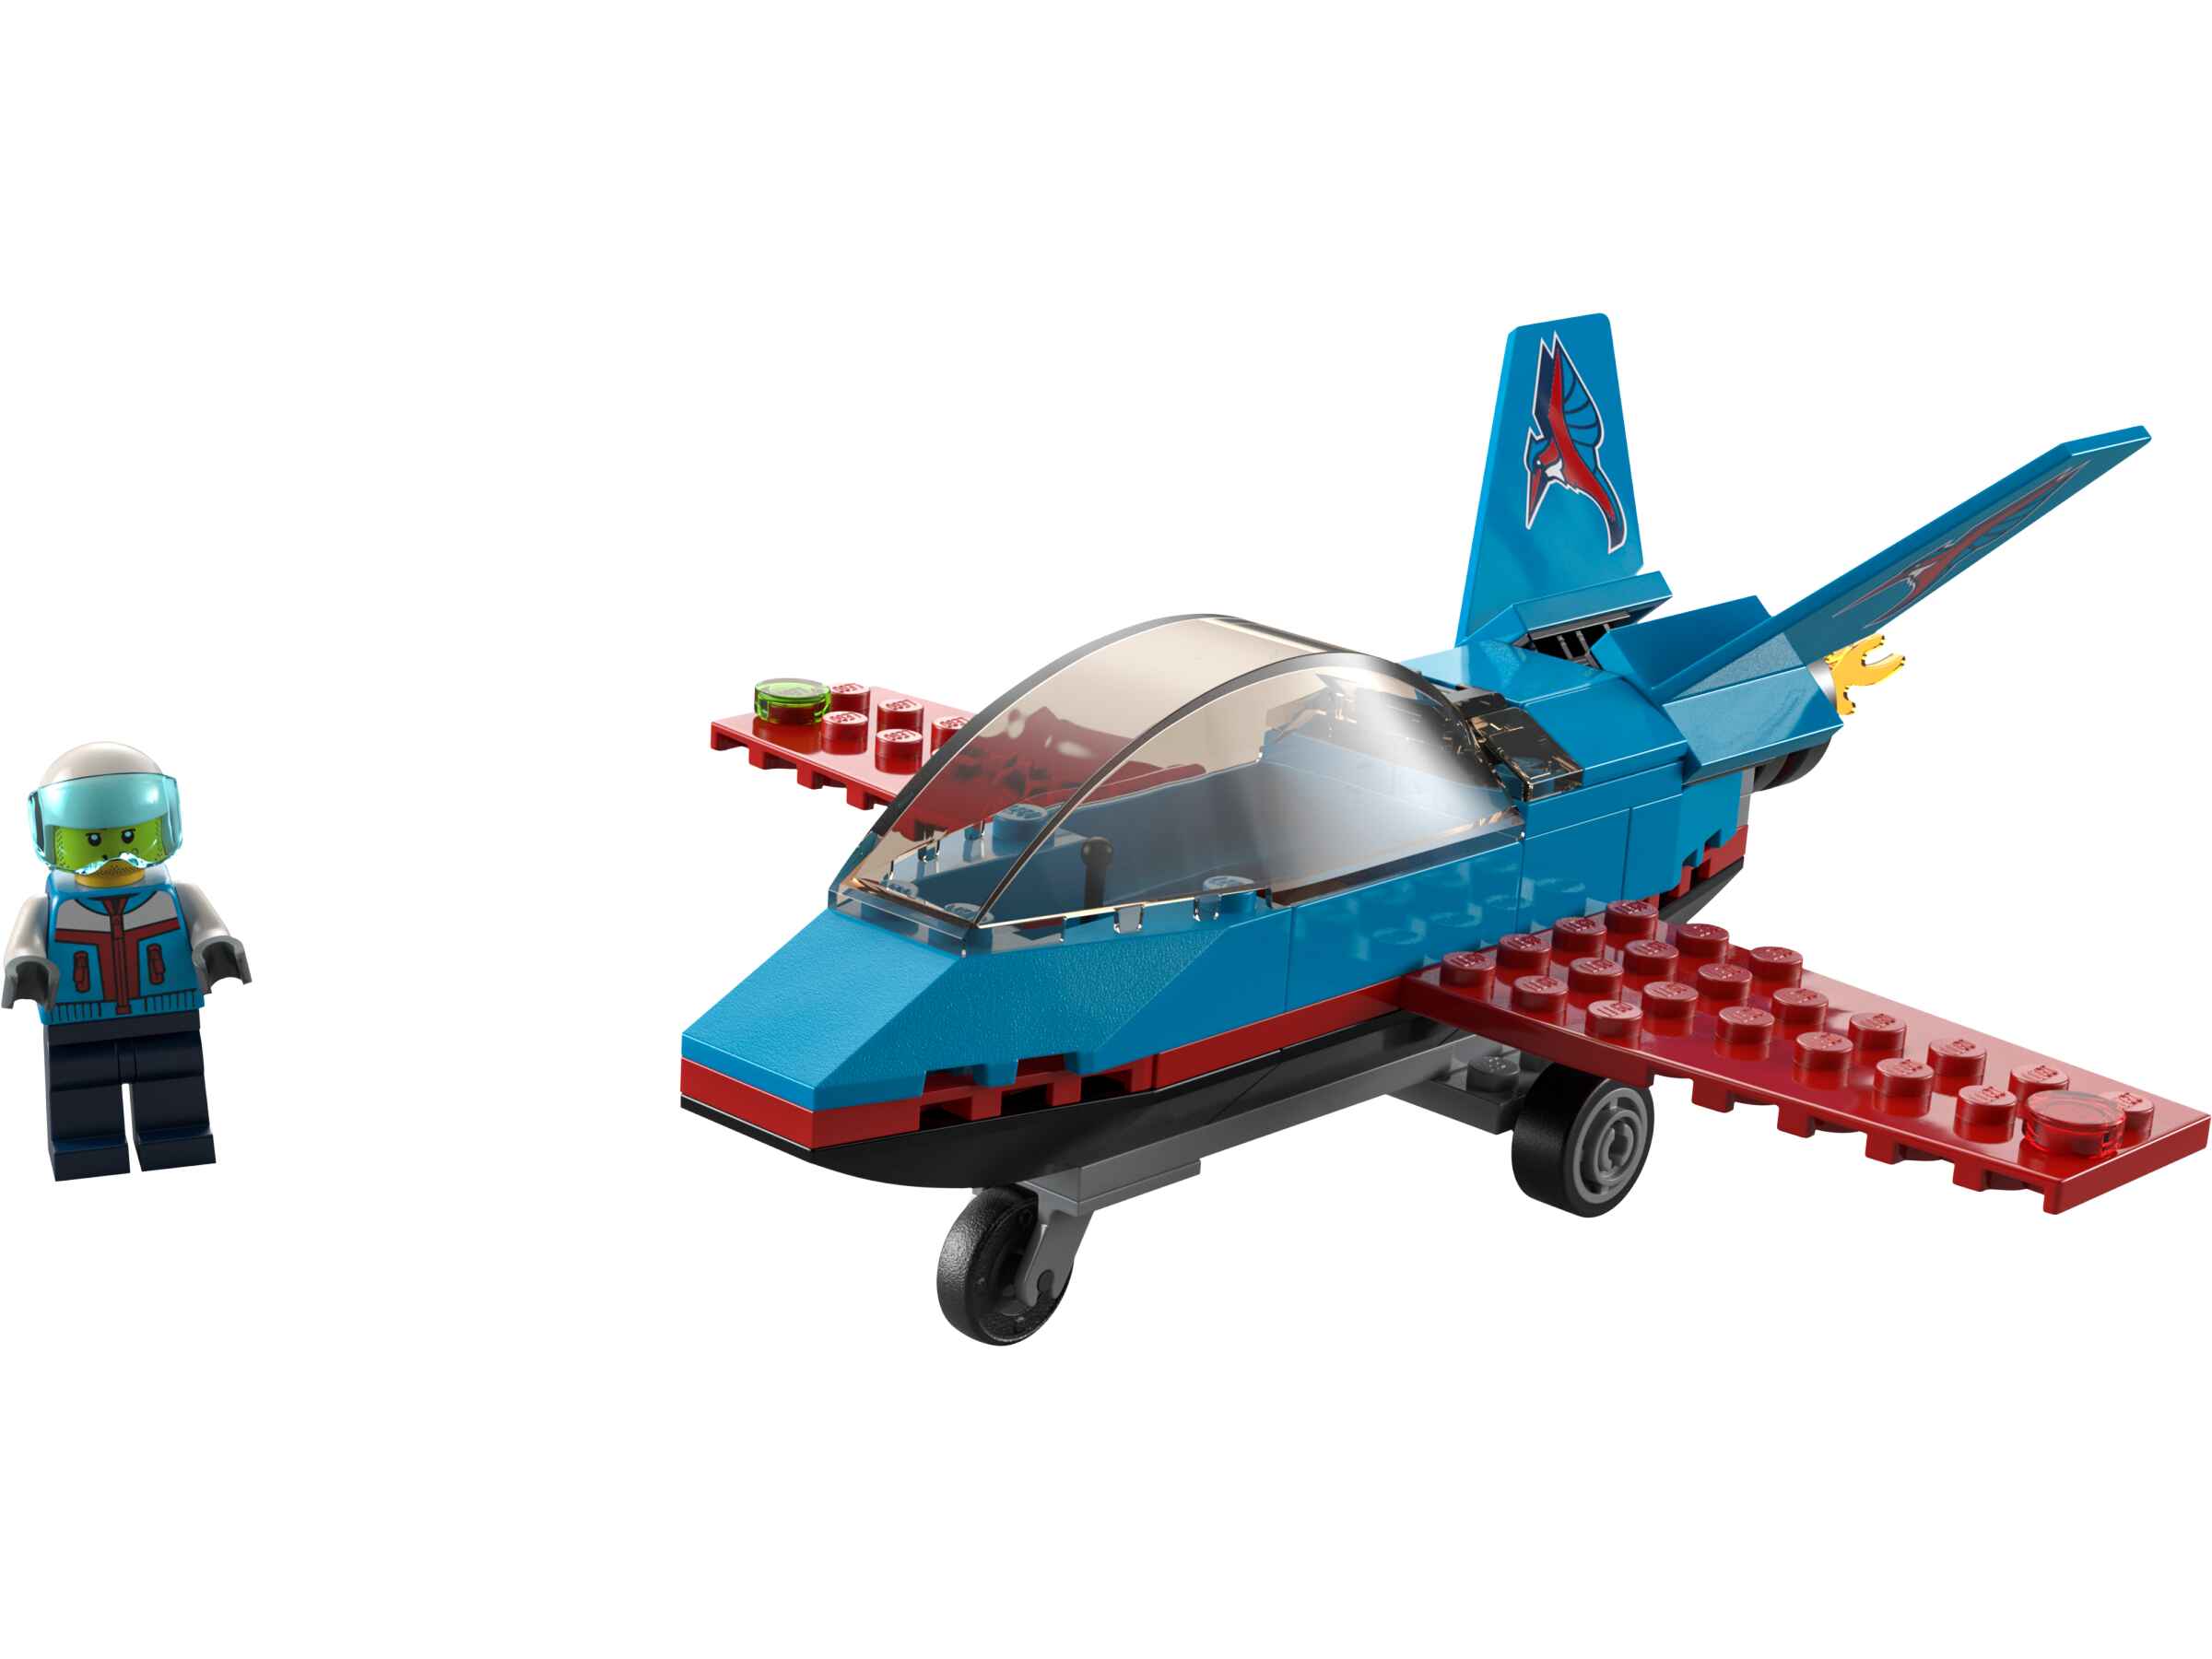 LEGO 60323 City Stuntflugzeug, Kunstflugzeug, Flugzeug mit 1 Piloten-Minifigur